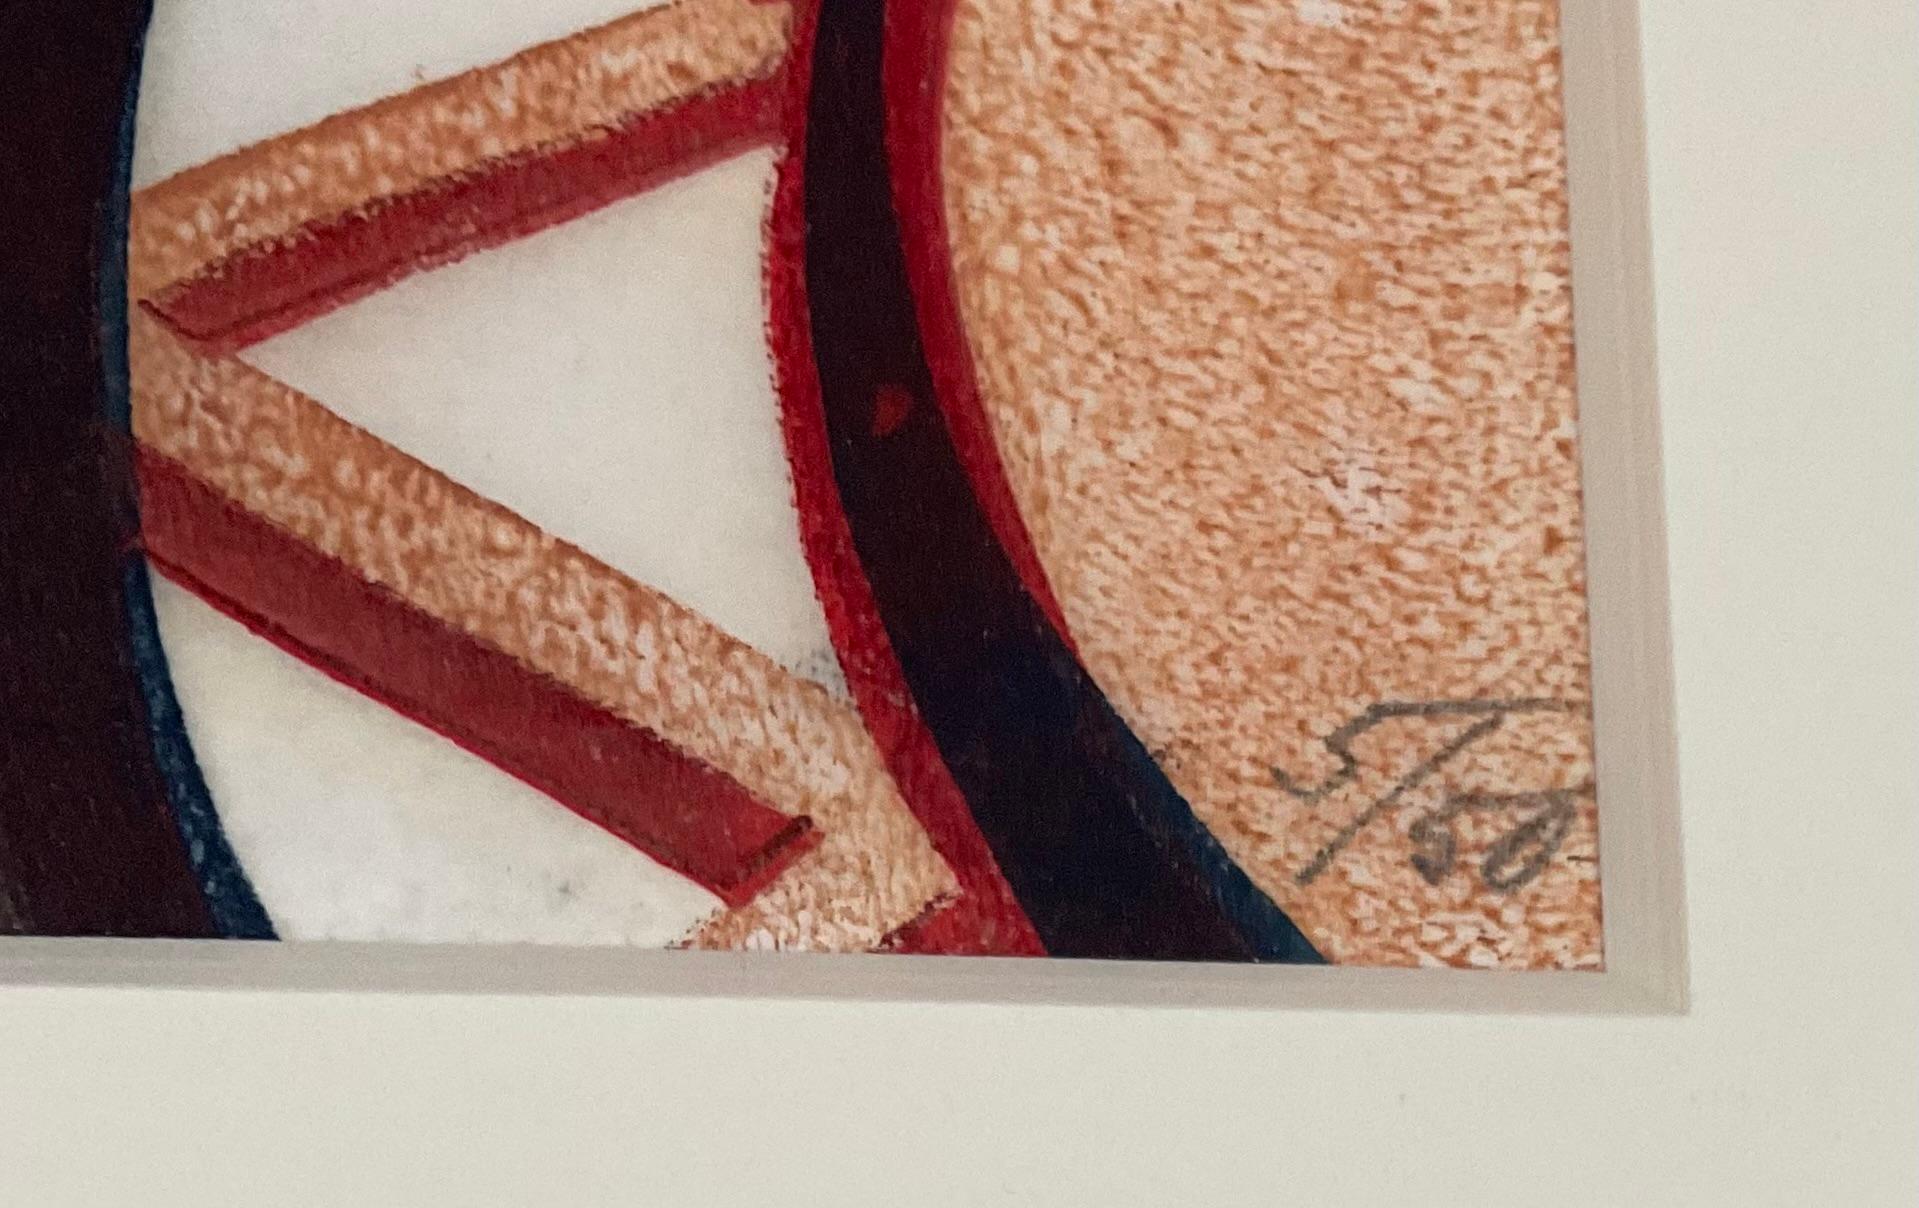 Lill Tschudi (1911-2004) Rhumba Band II Linolschnitt Signiert und nummeriert 5 von 50. Mit Kopien der Original-Galerieunterlagen der Mary Ryan Gallery New York, NY, und Kaufbeleg von 1990. 